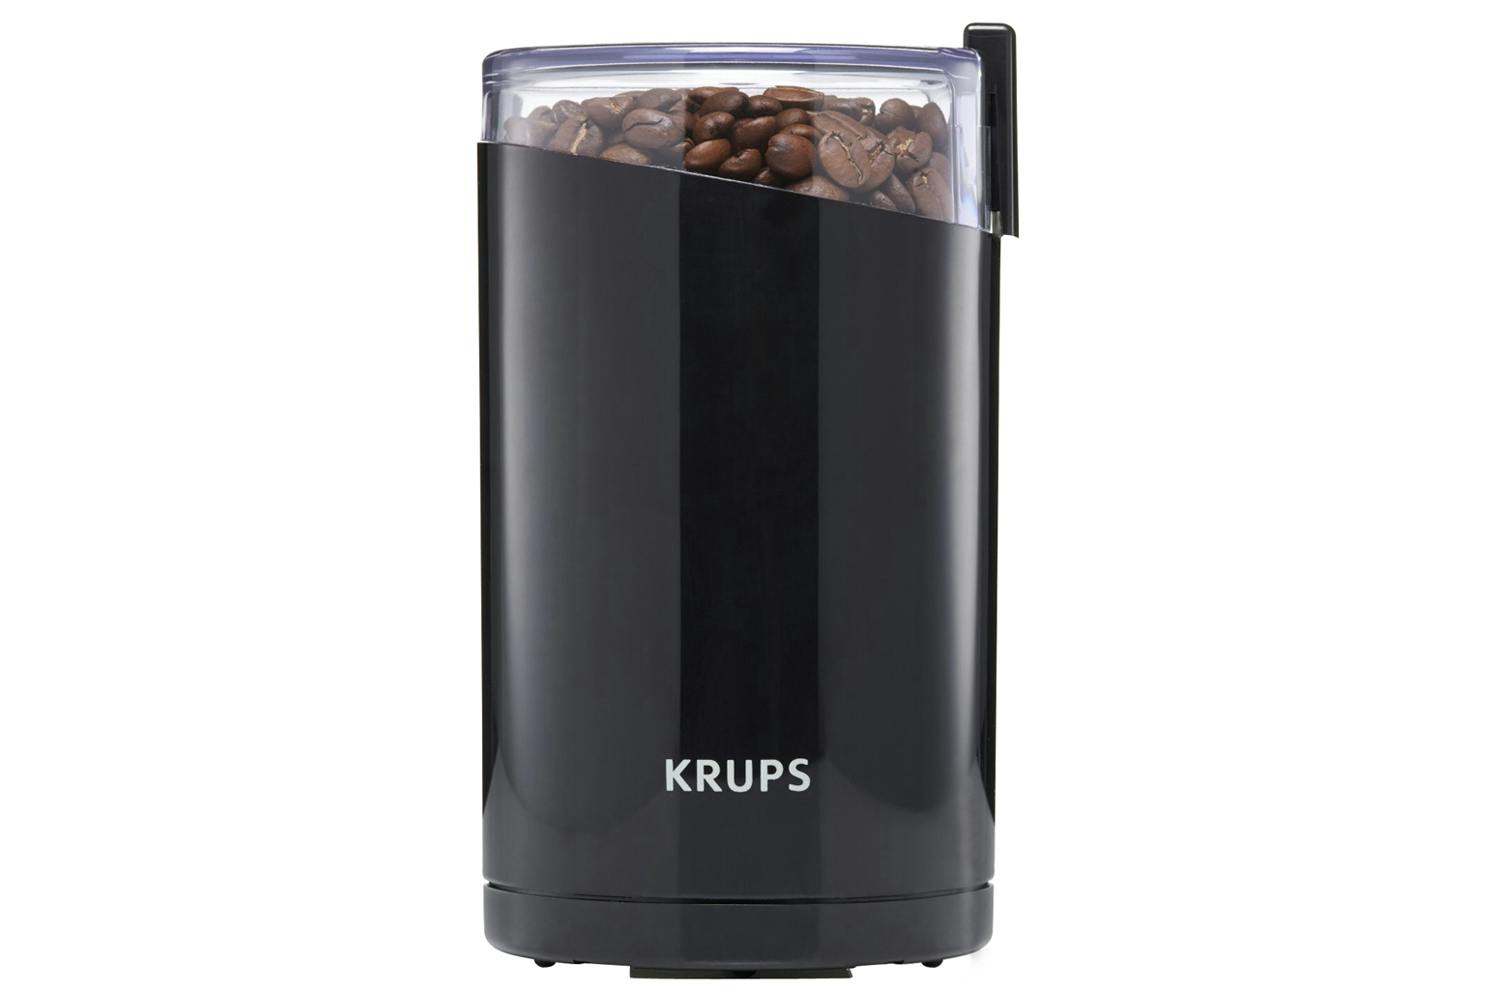 Krups Coffee Mill | F20342 | Black